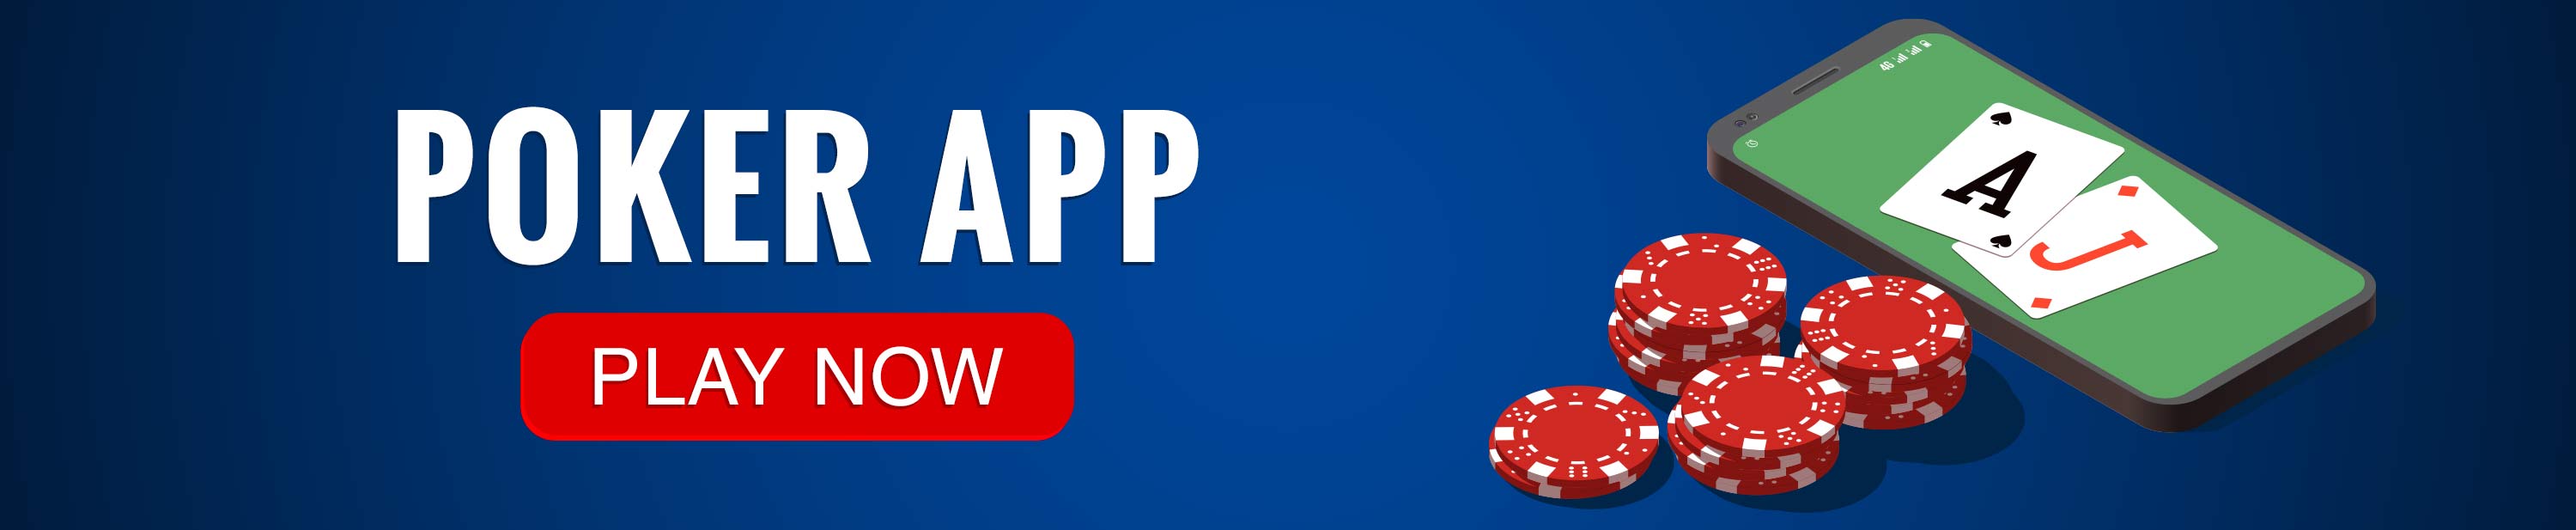 Poker App - Best Real Money Poker App Online - PokerBaazi